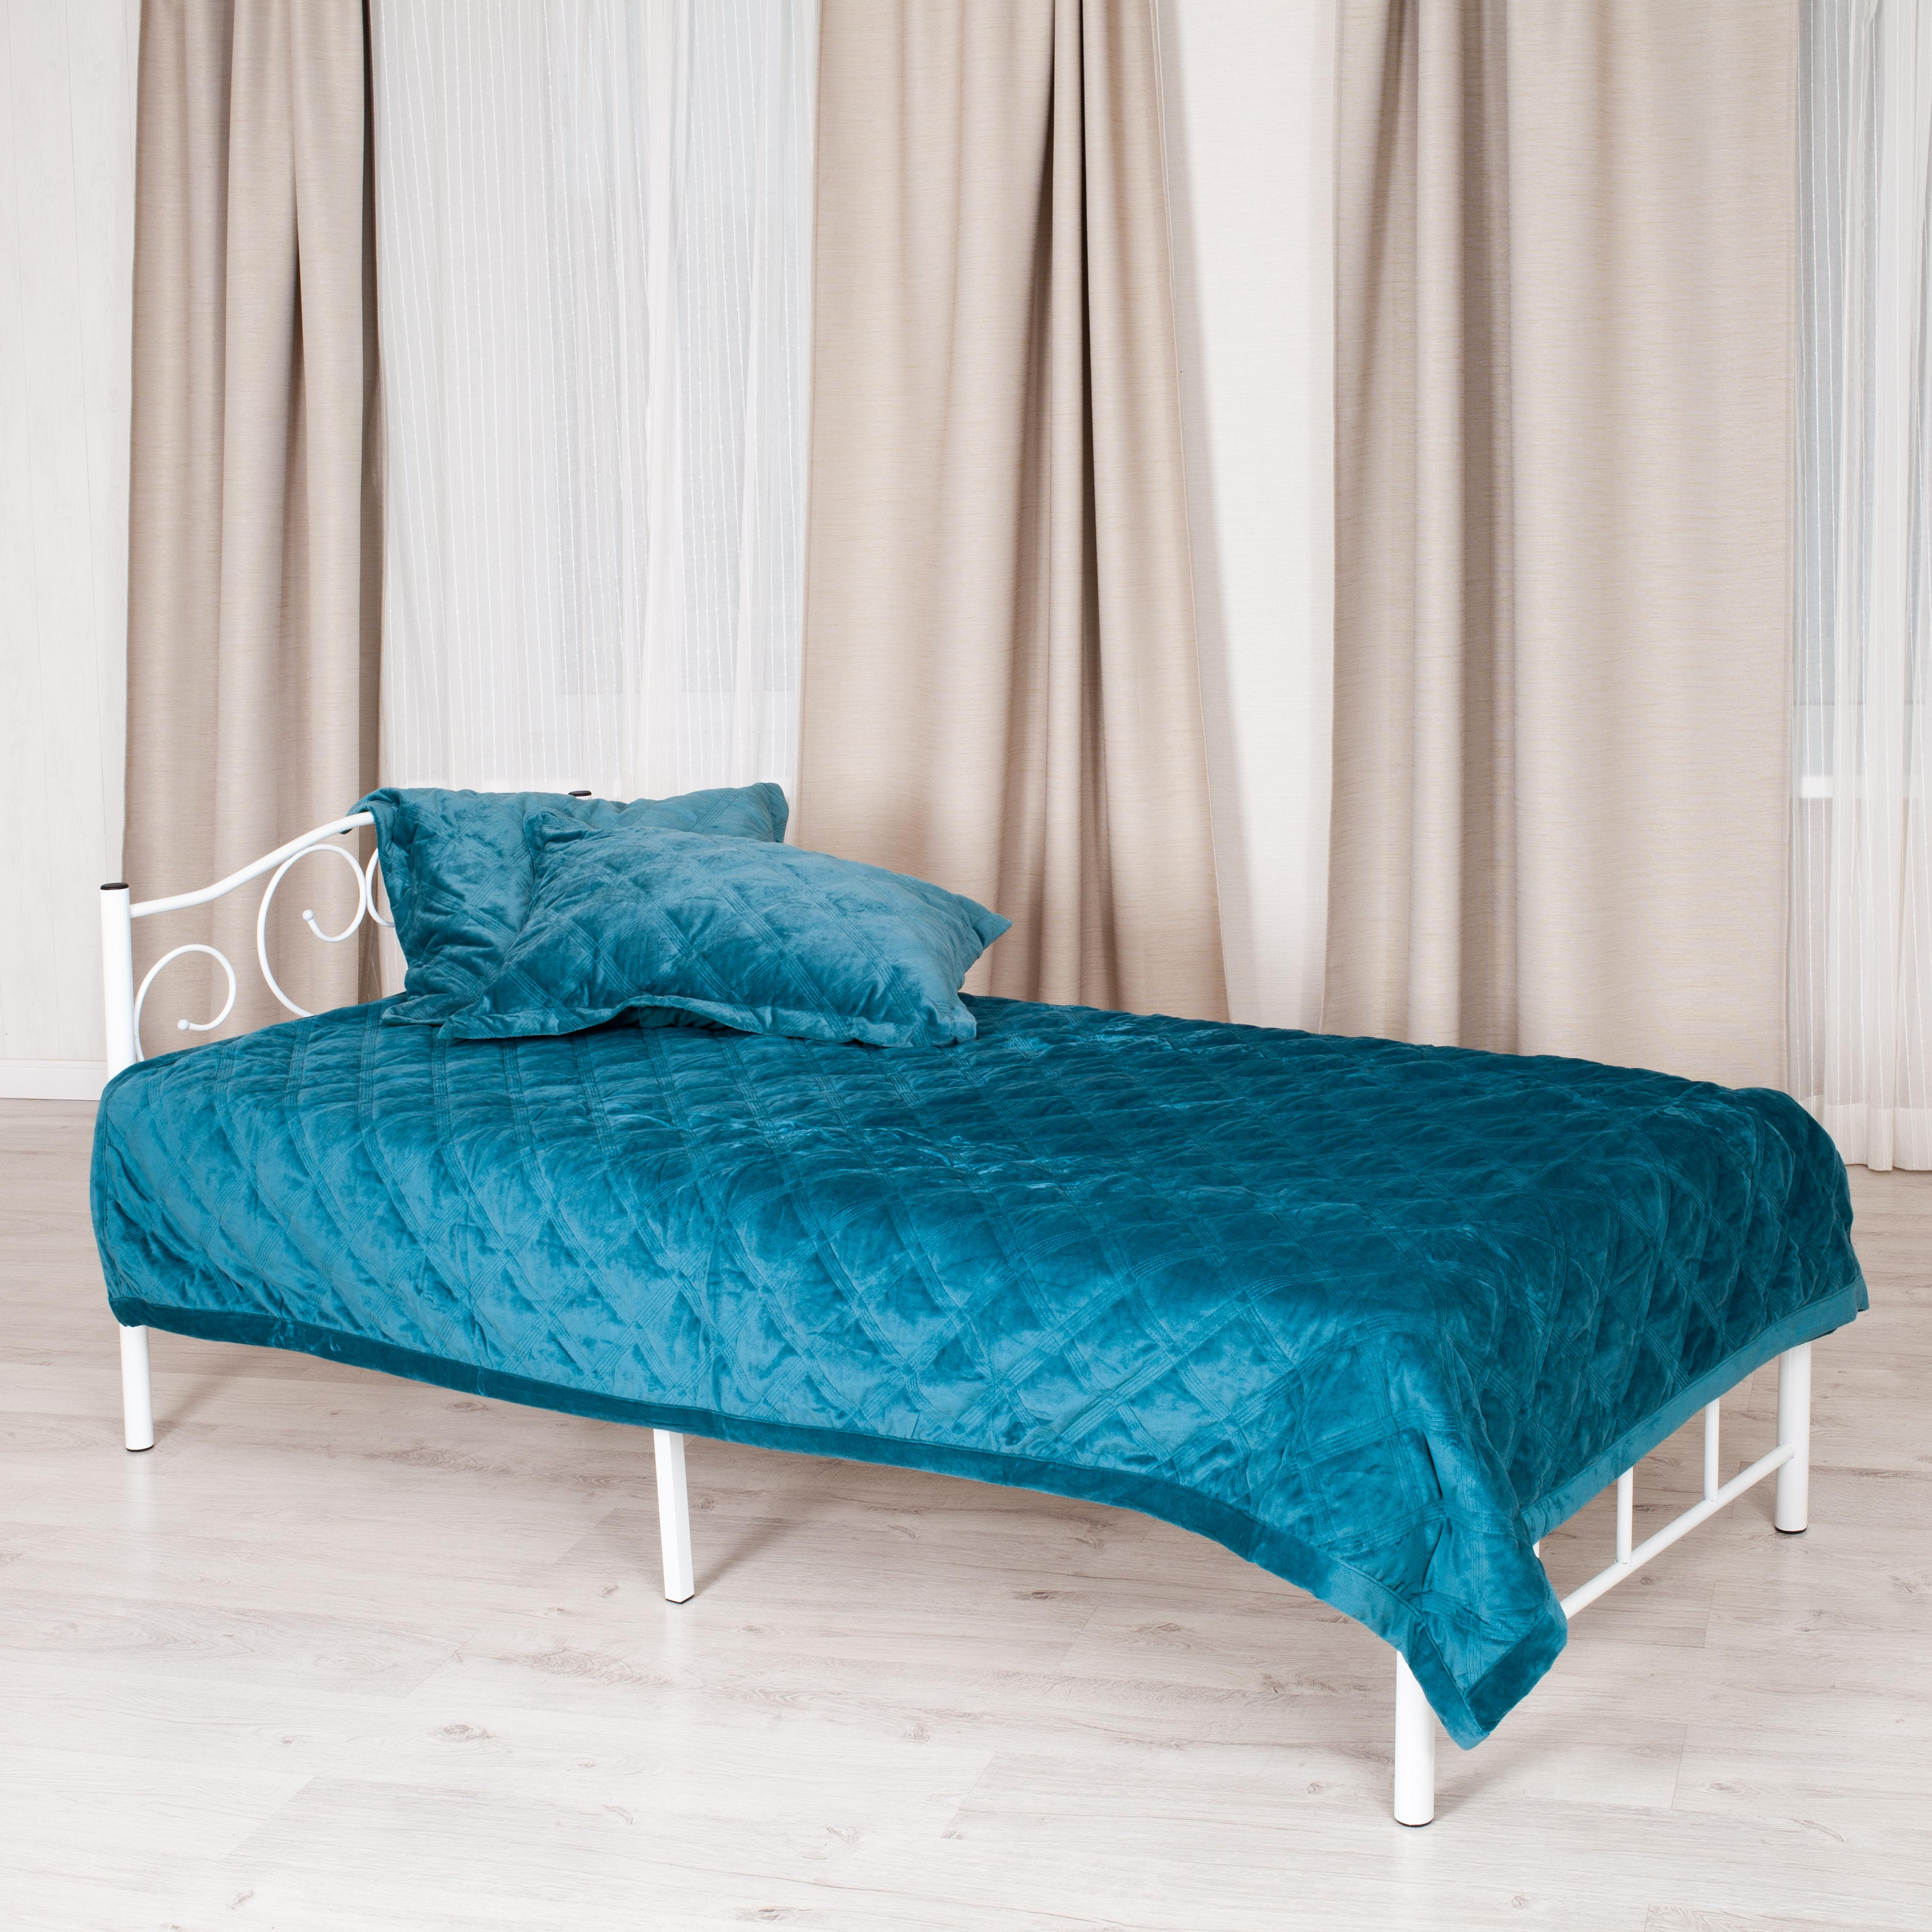 Кровать MALVA (mod. 9303) металл, 90*200 см (Single bed), White (белый)